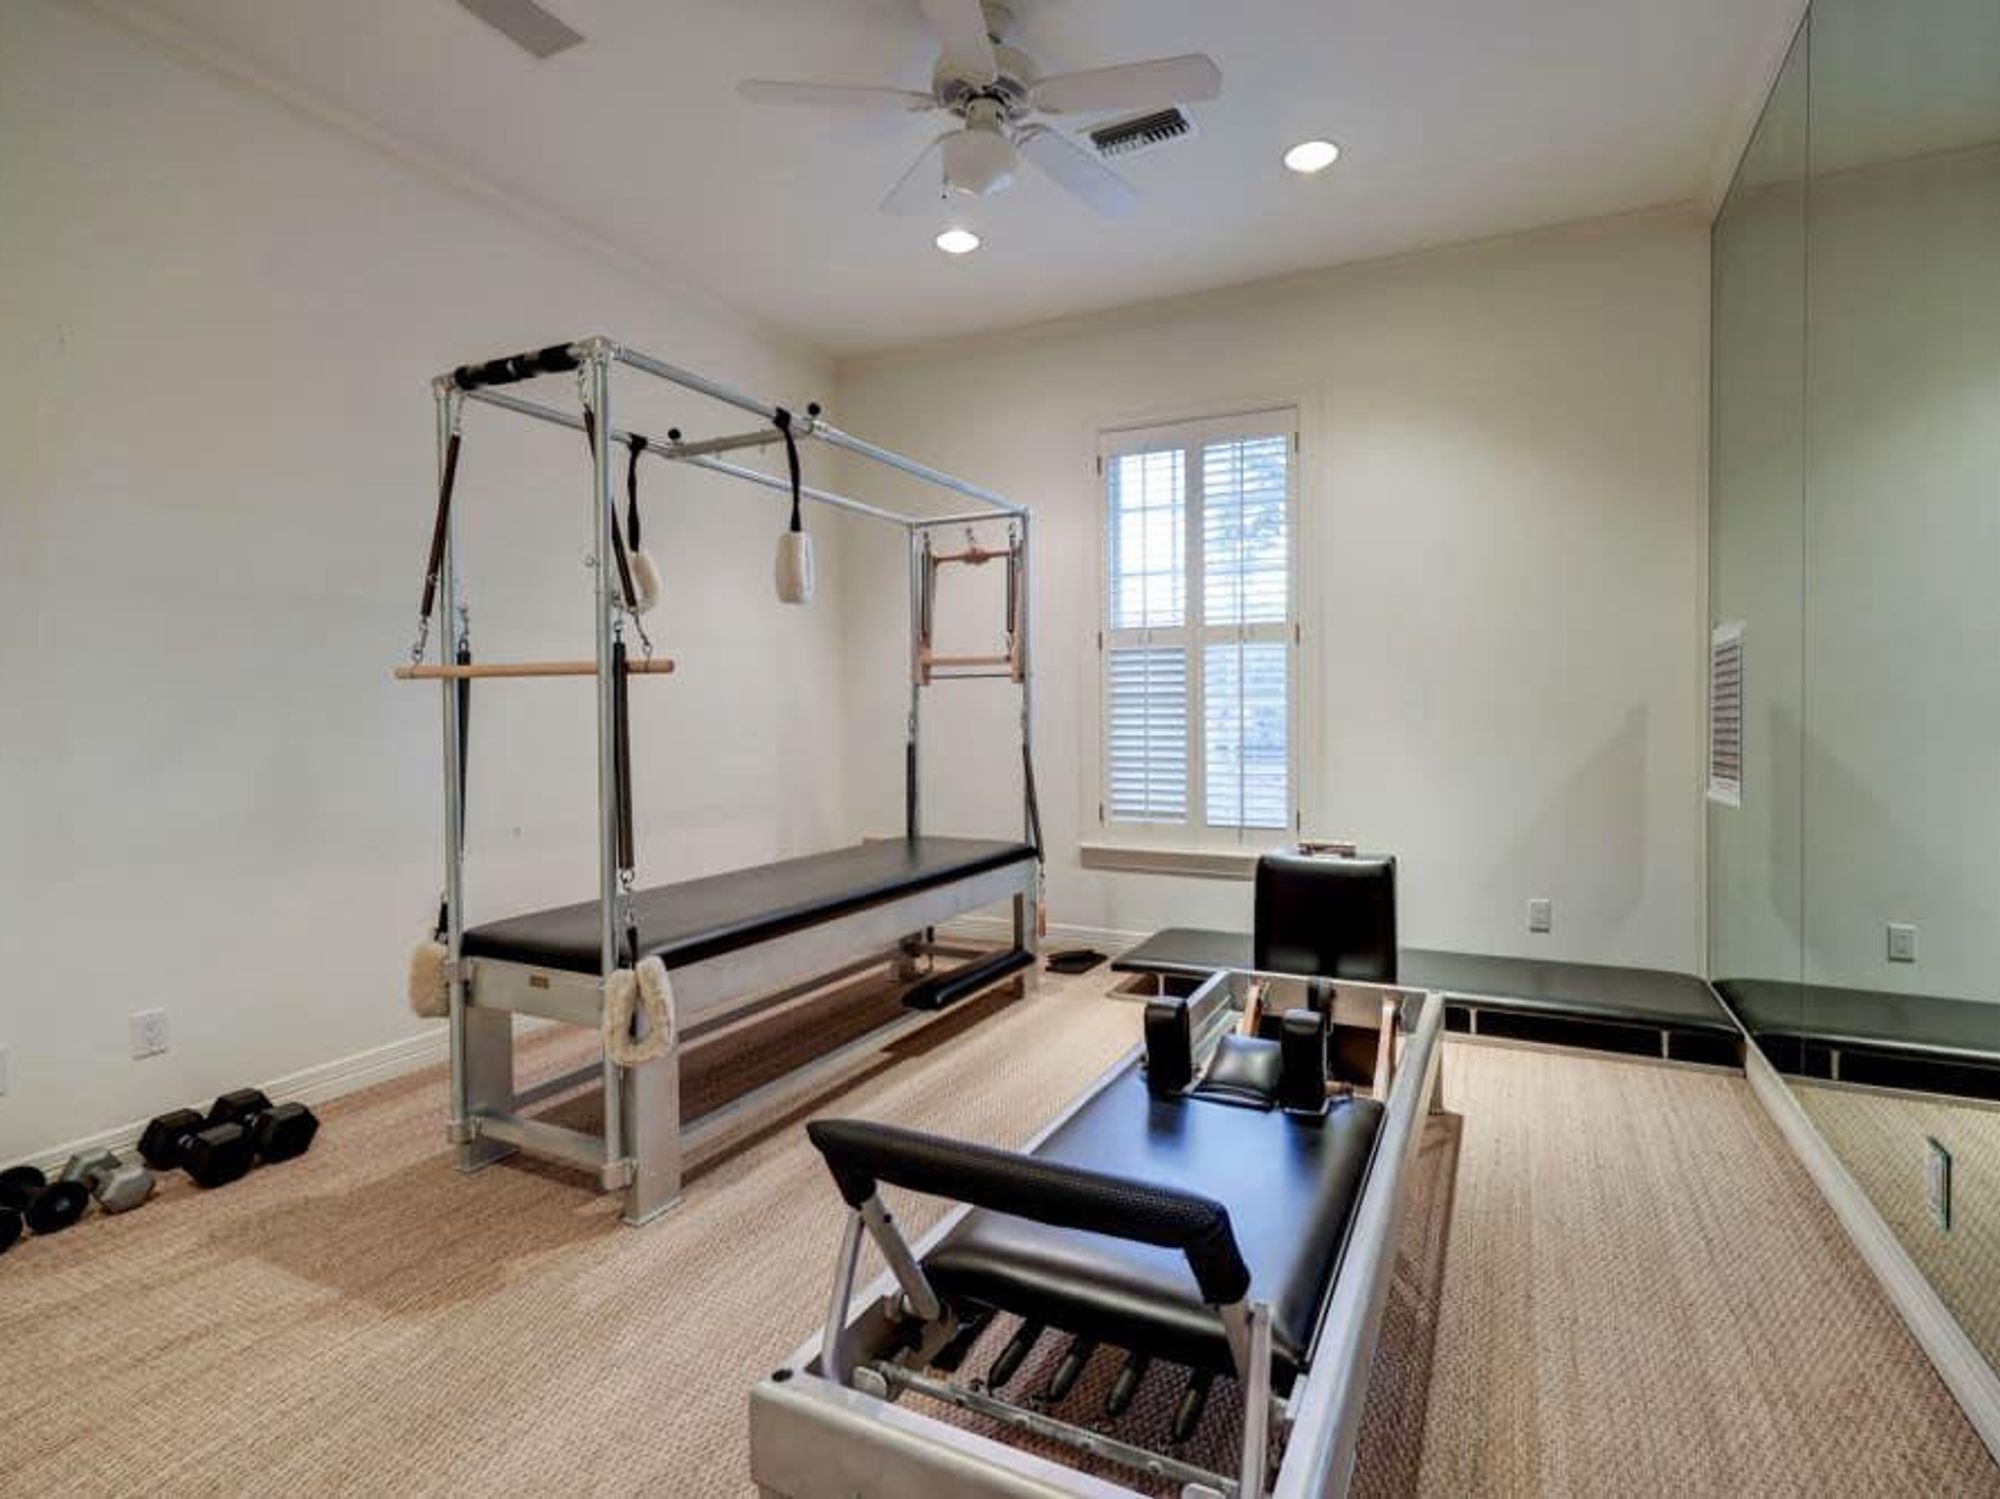 A dedicated home gym.